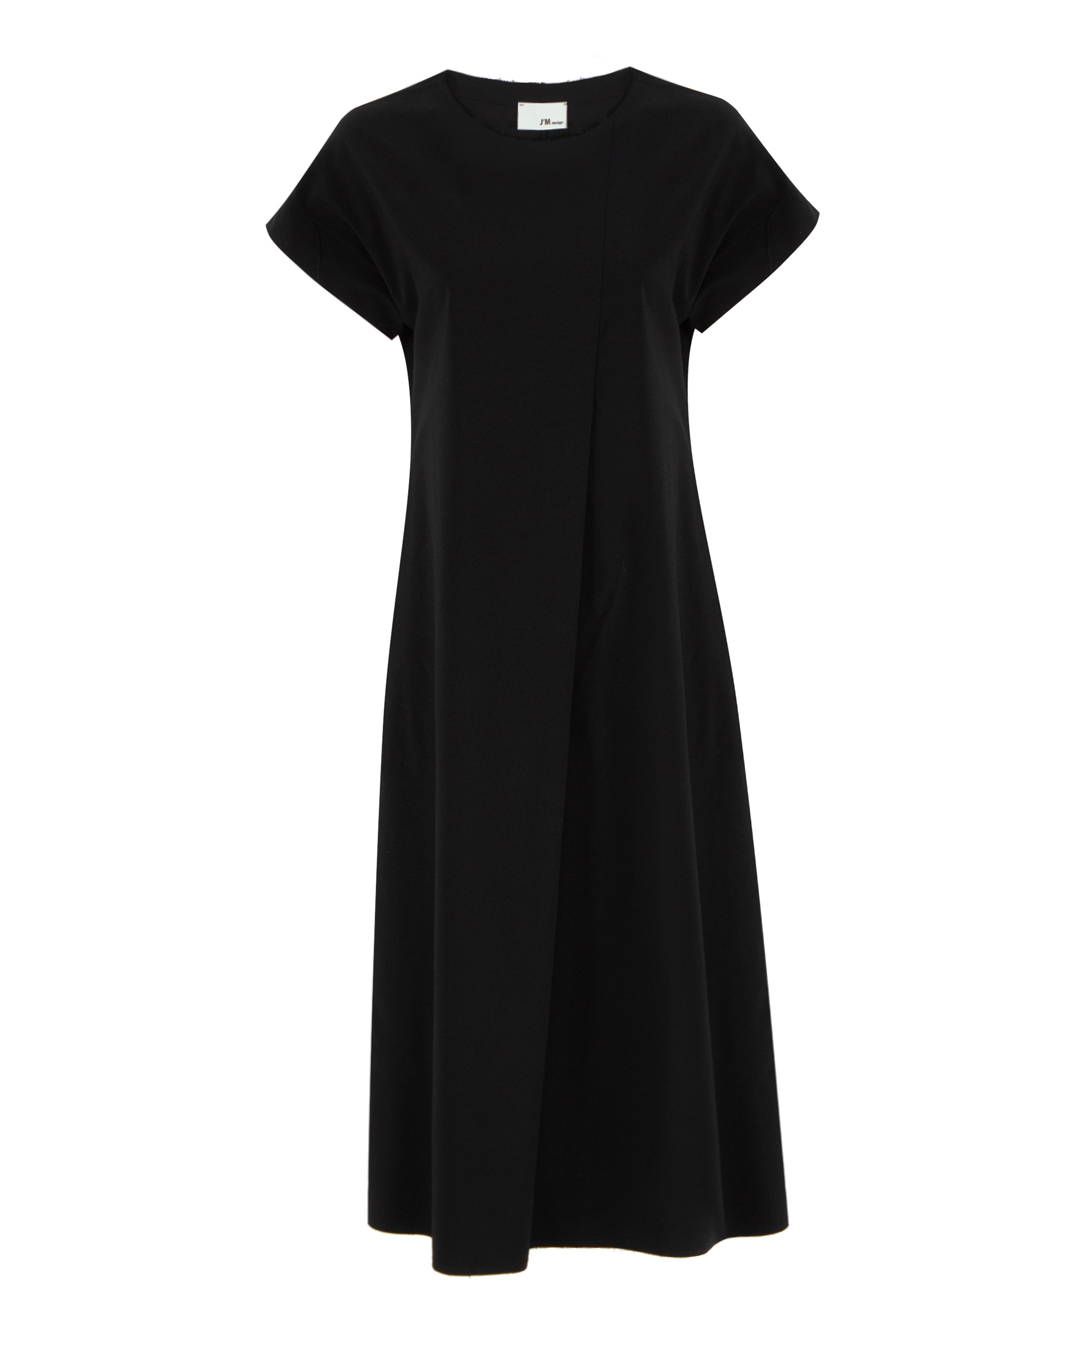 платье J.M design JM-AB1706 черный 2xs, размер 2xs - фото 1